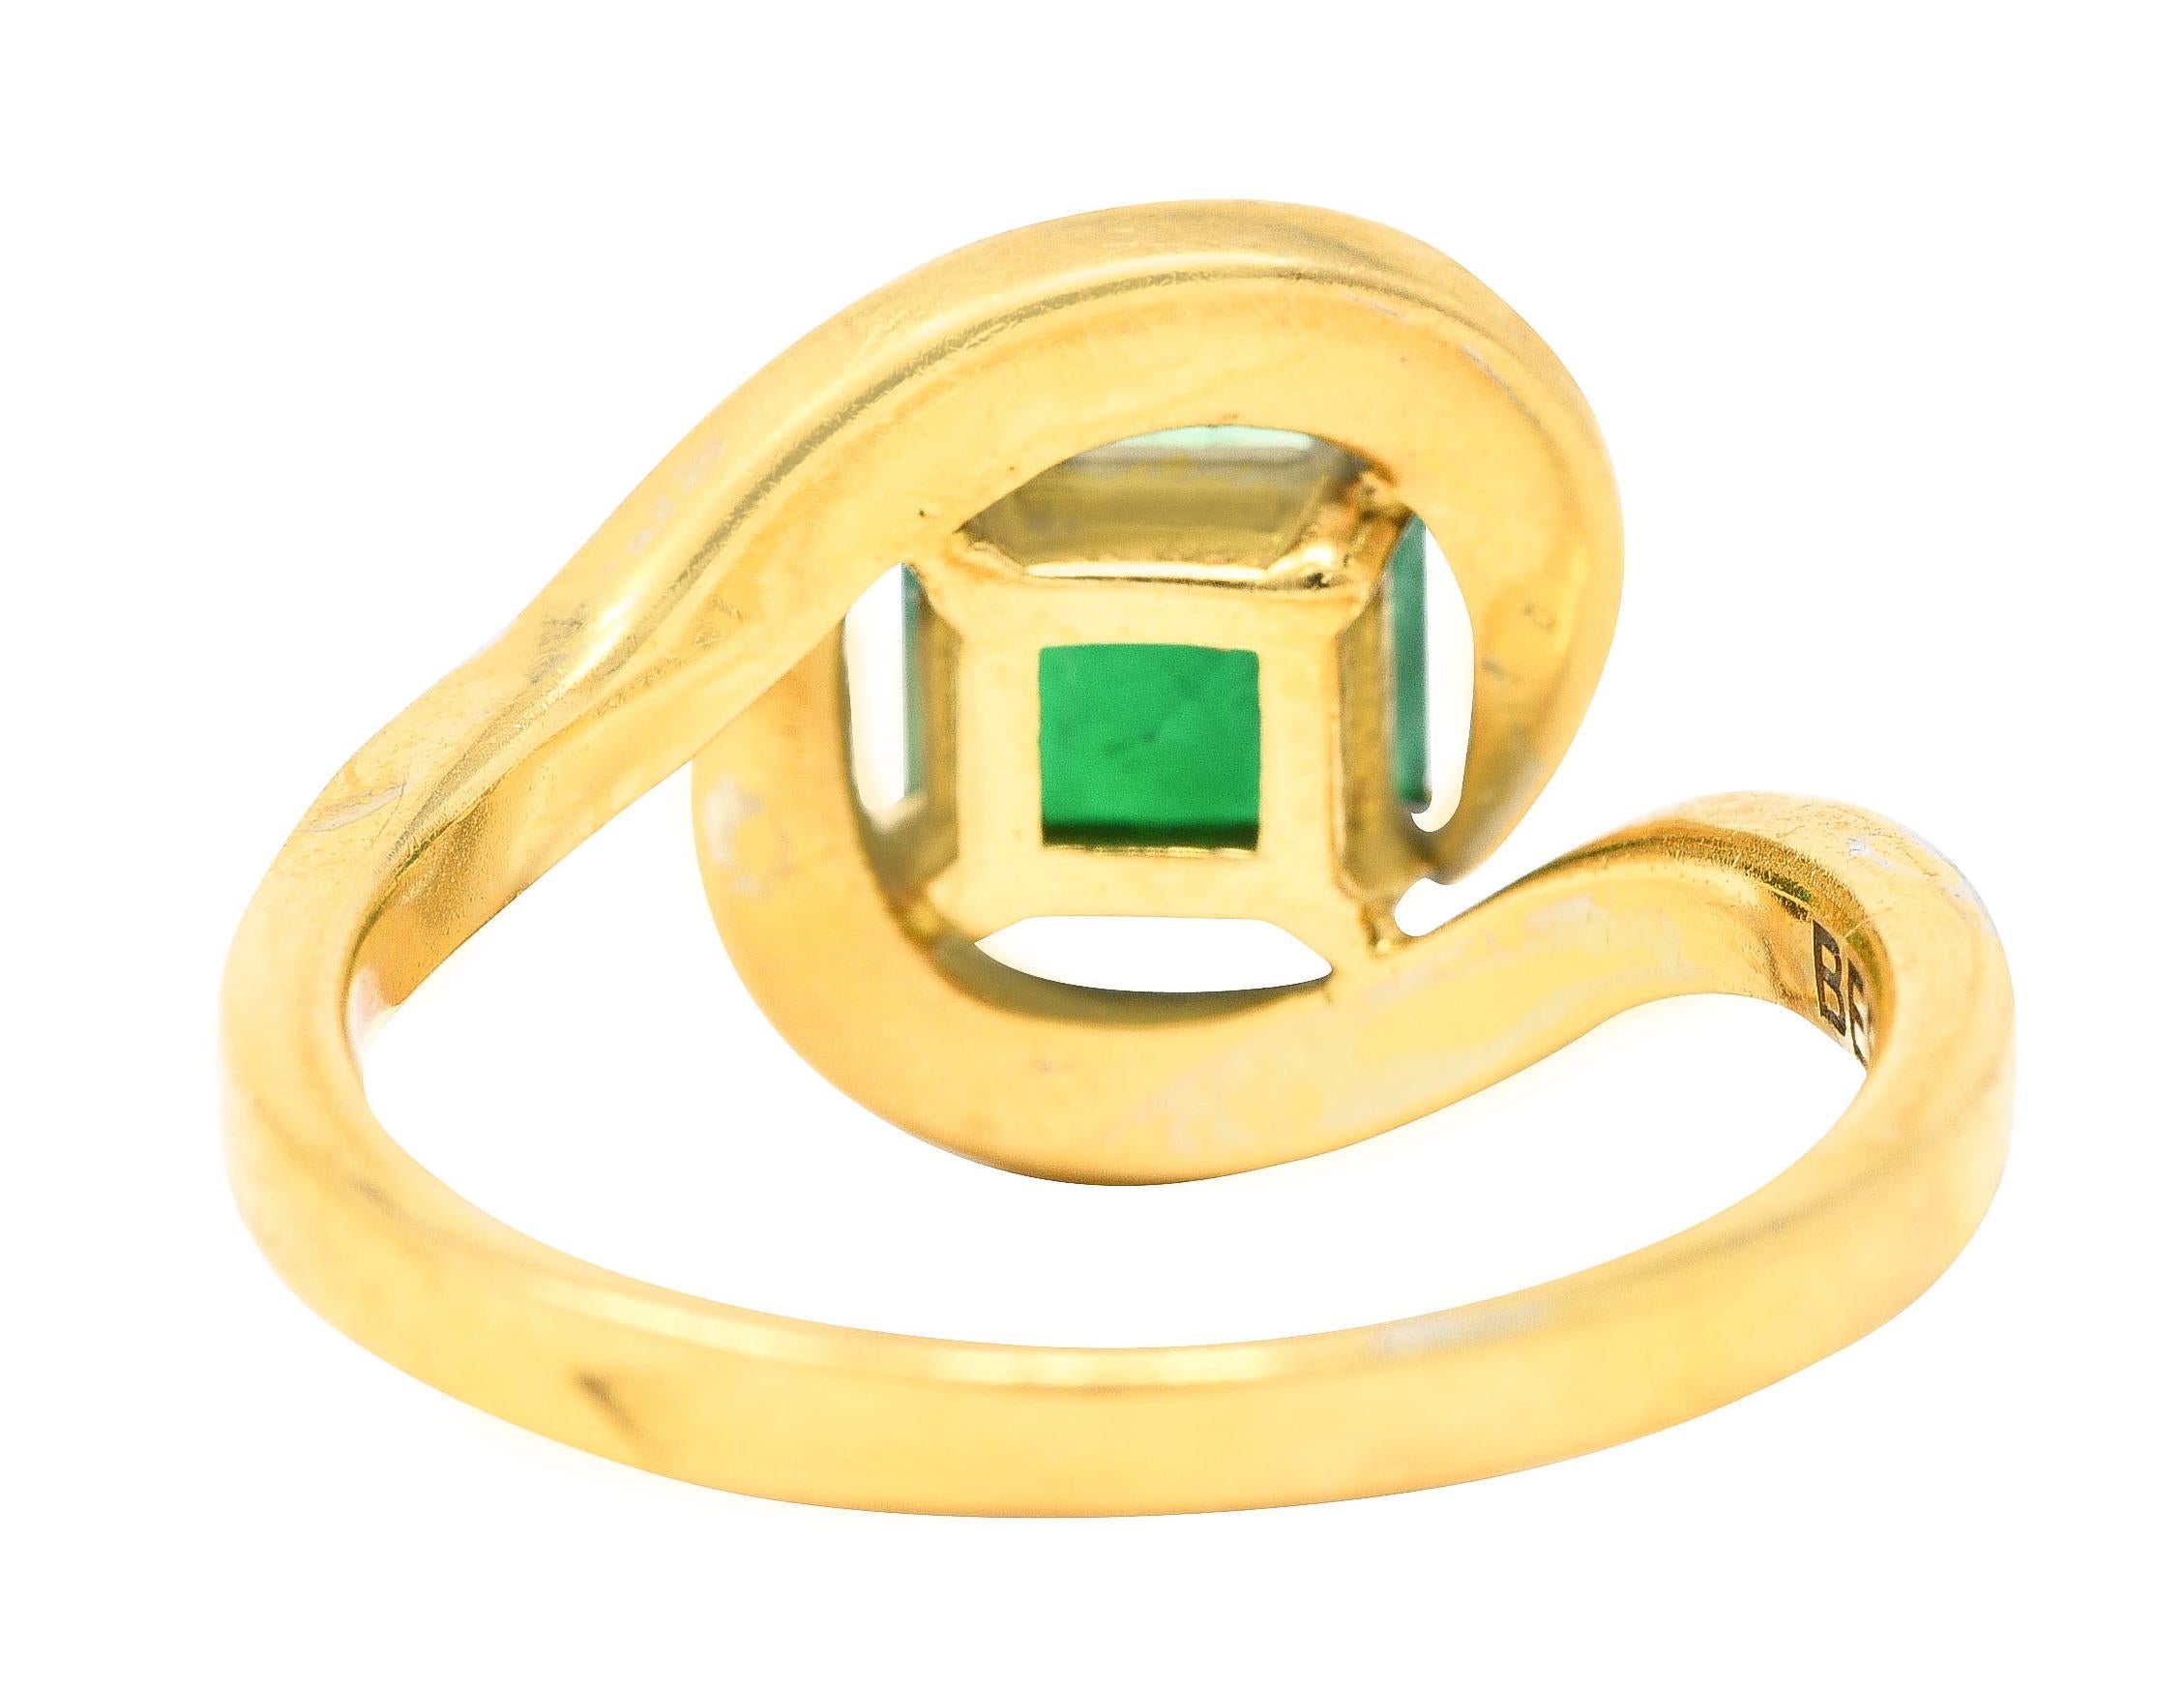 Emerald Cut French Maison 1.57 Carats Emerald Diamond 18 Karat Yellow Gold Bypass Ring